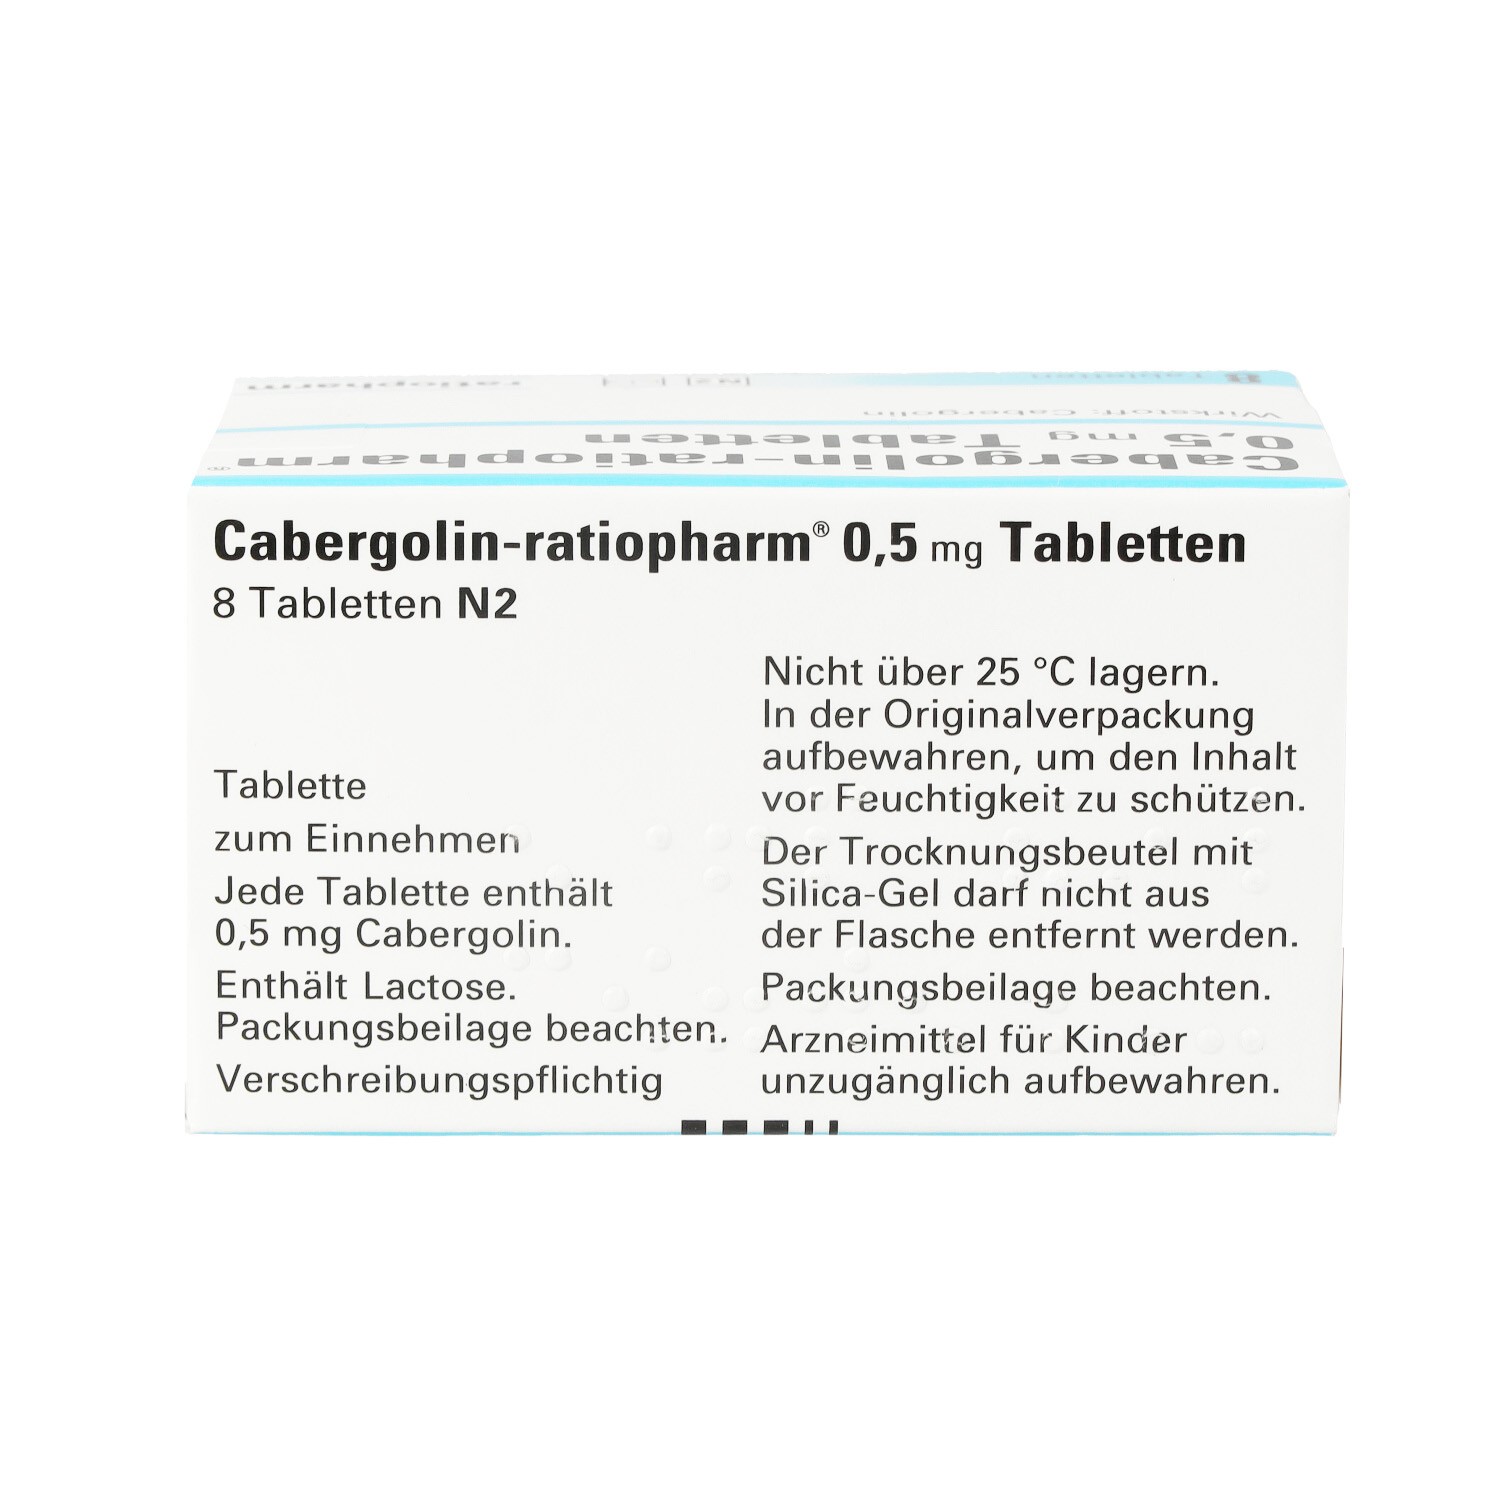 CABERGOLIN-ratiopharm 0,5 mg Tabletten